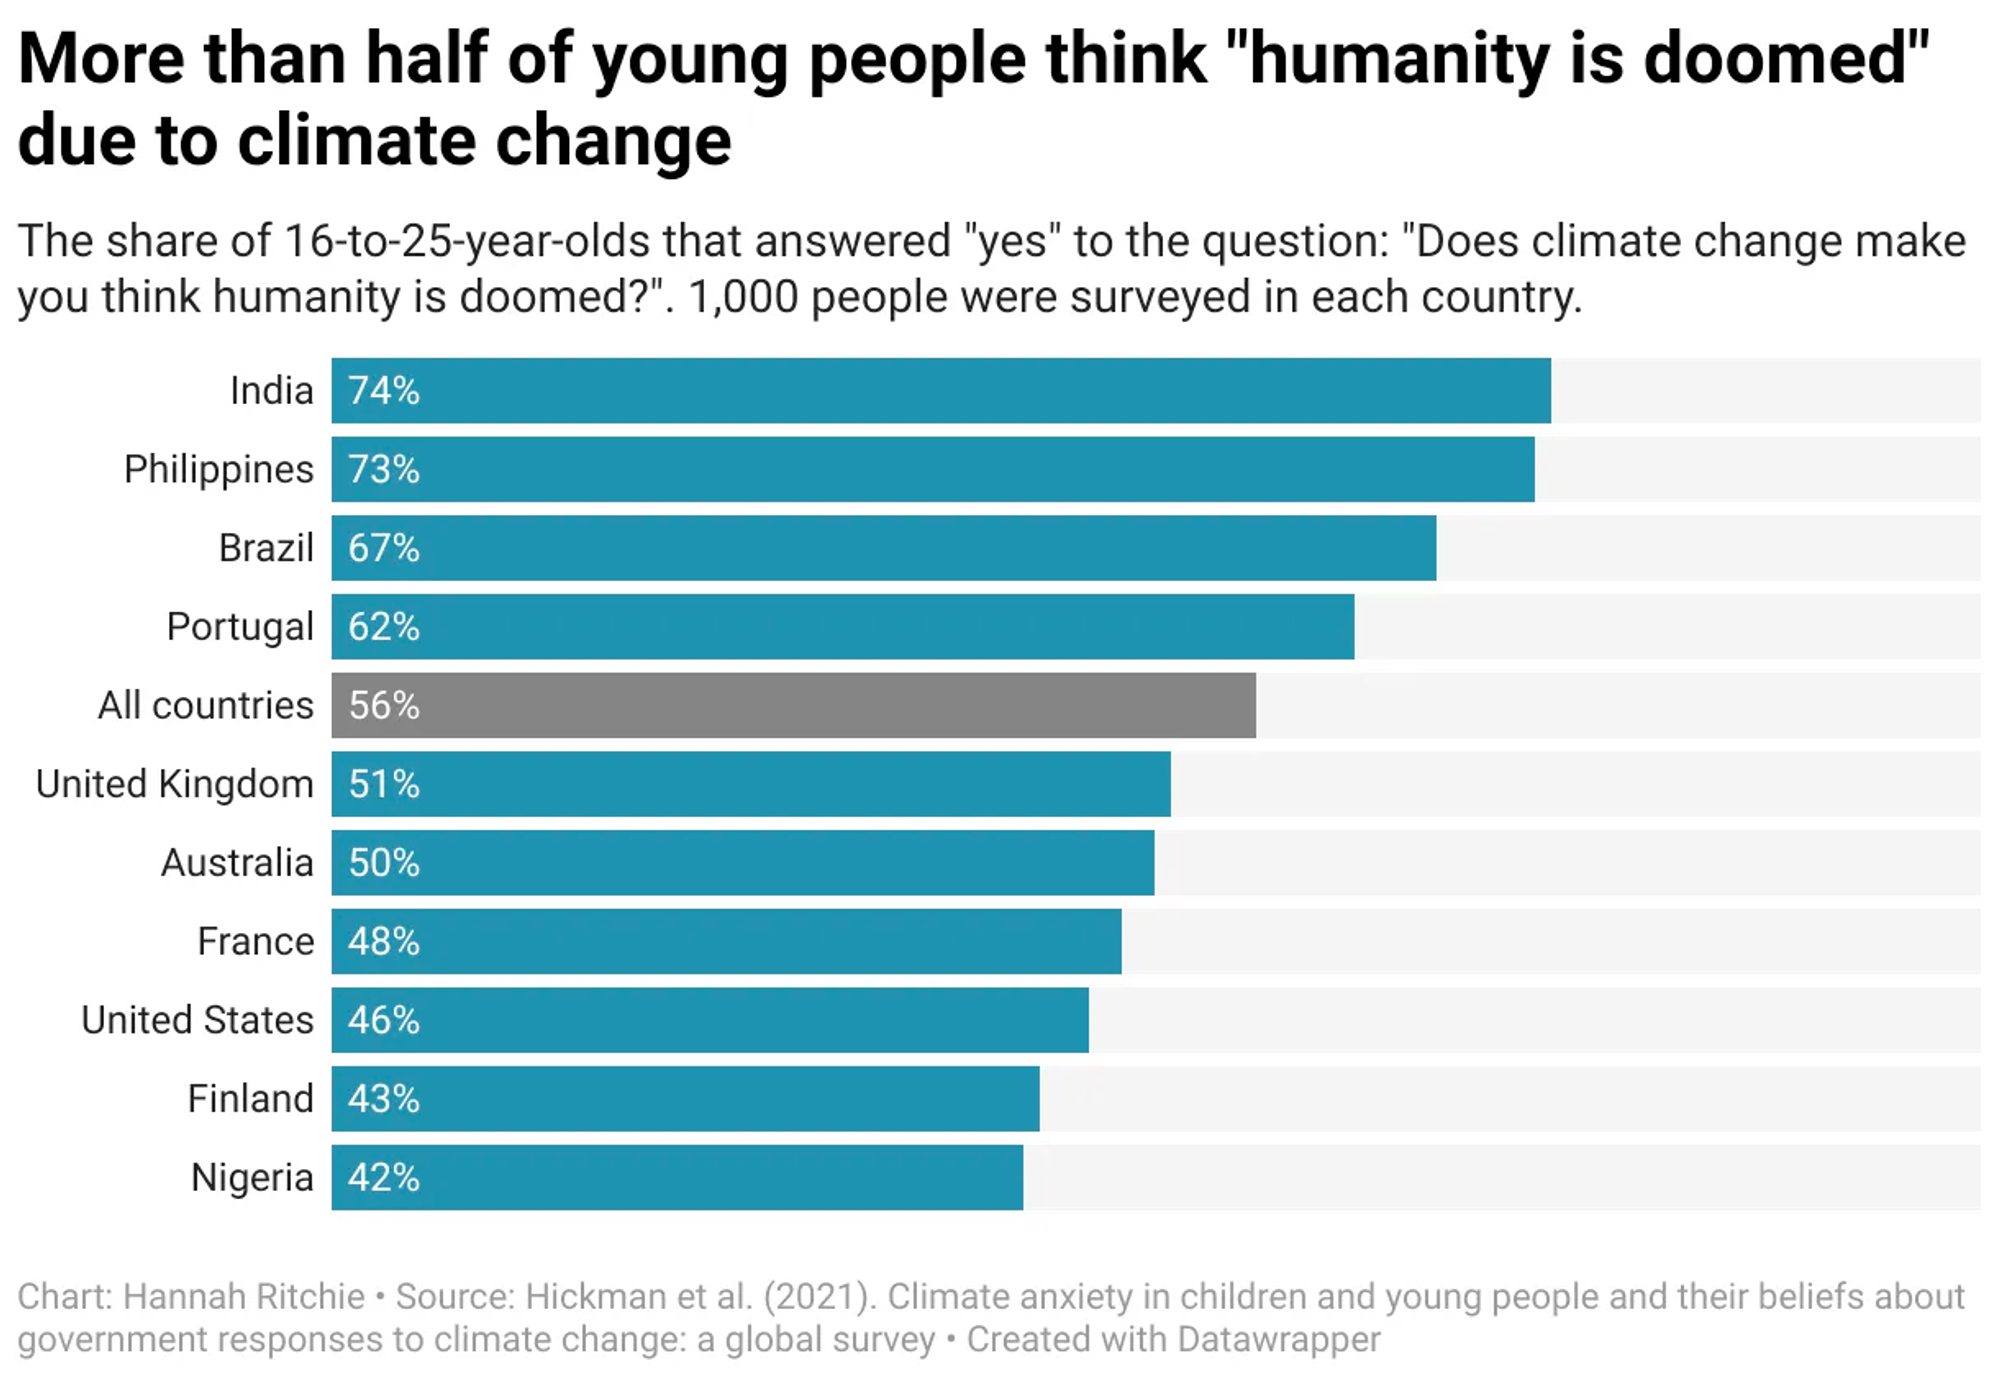 Plus de la moitié des jeunes pensent que l’humanité est “doomed”, alors qu’il n’est pas trop tard pour agir